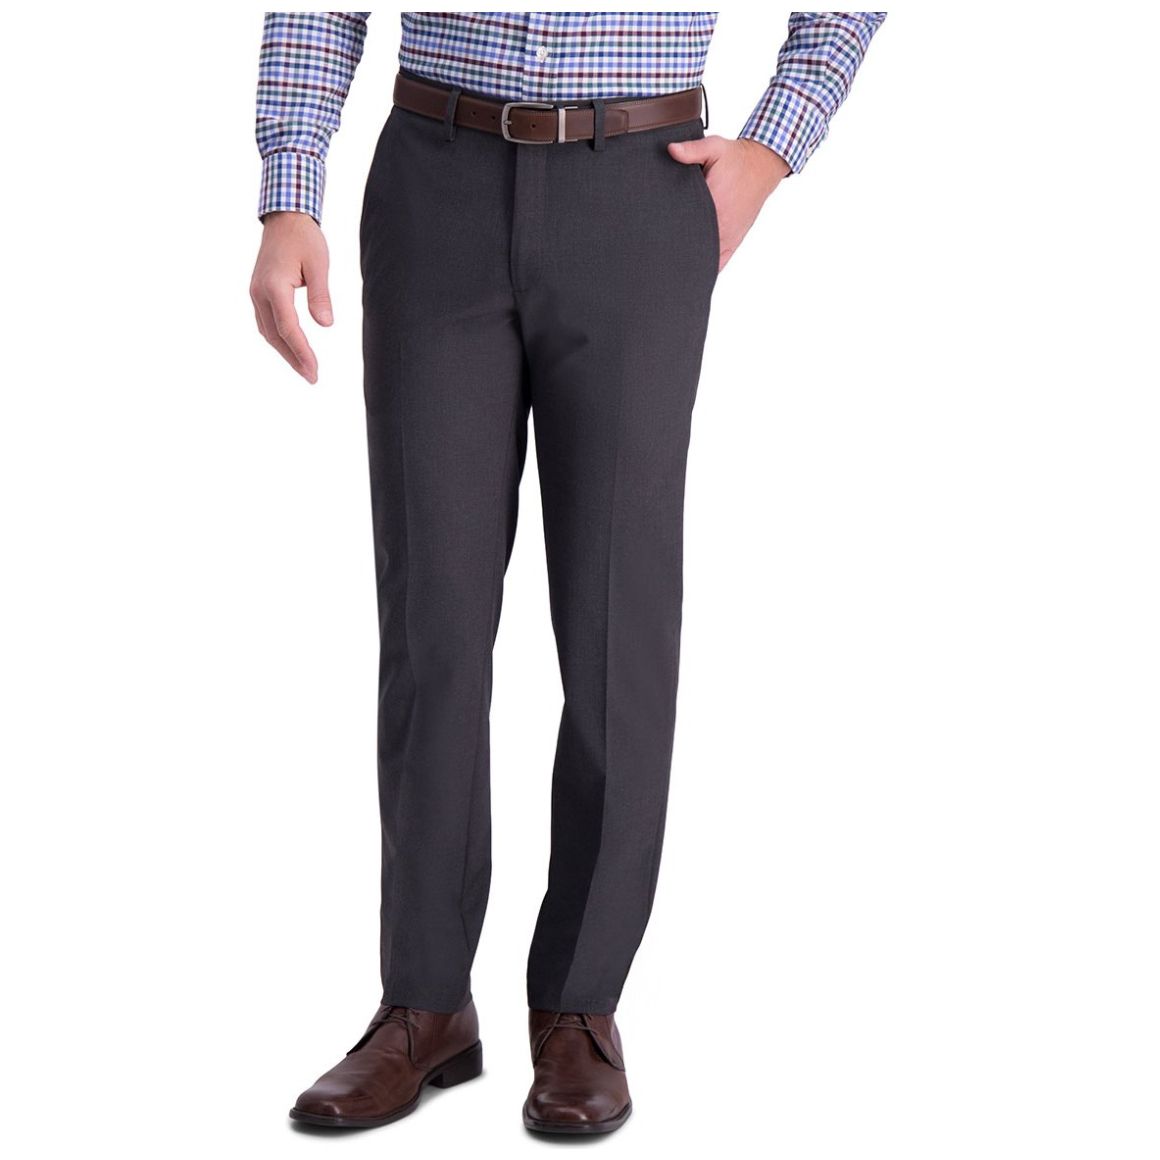 Sears: 3×2 En Pantalones De Vestir, Casual, Jeans, Trajes Y Sacos